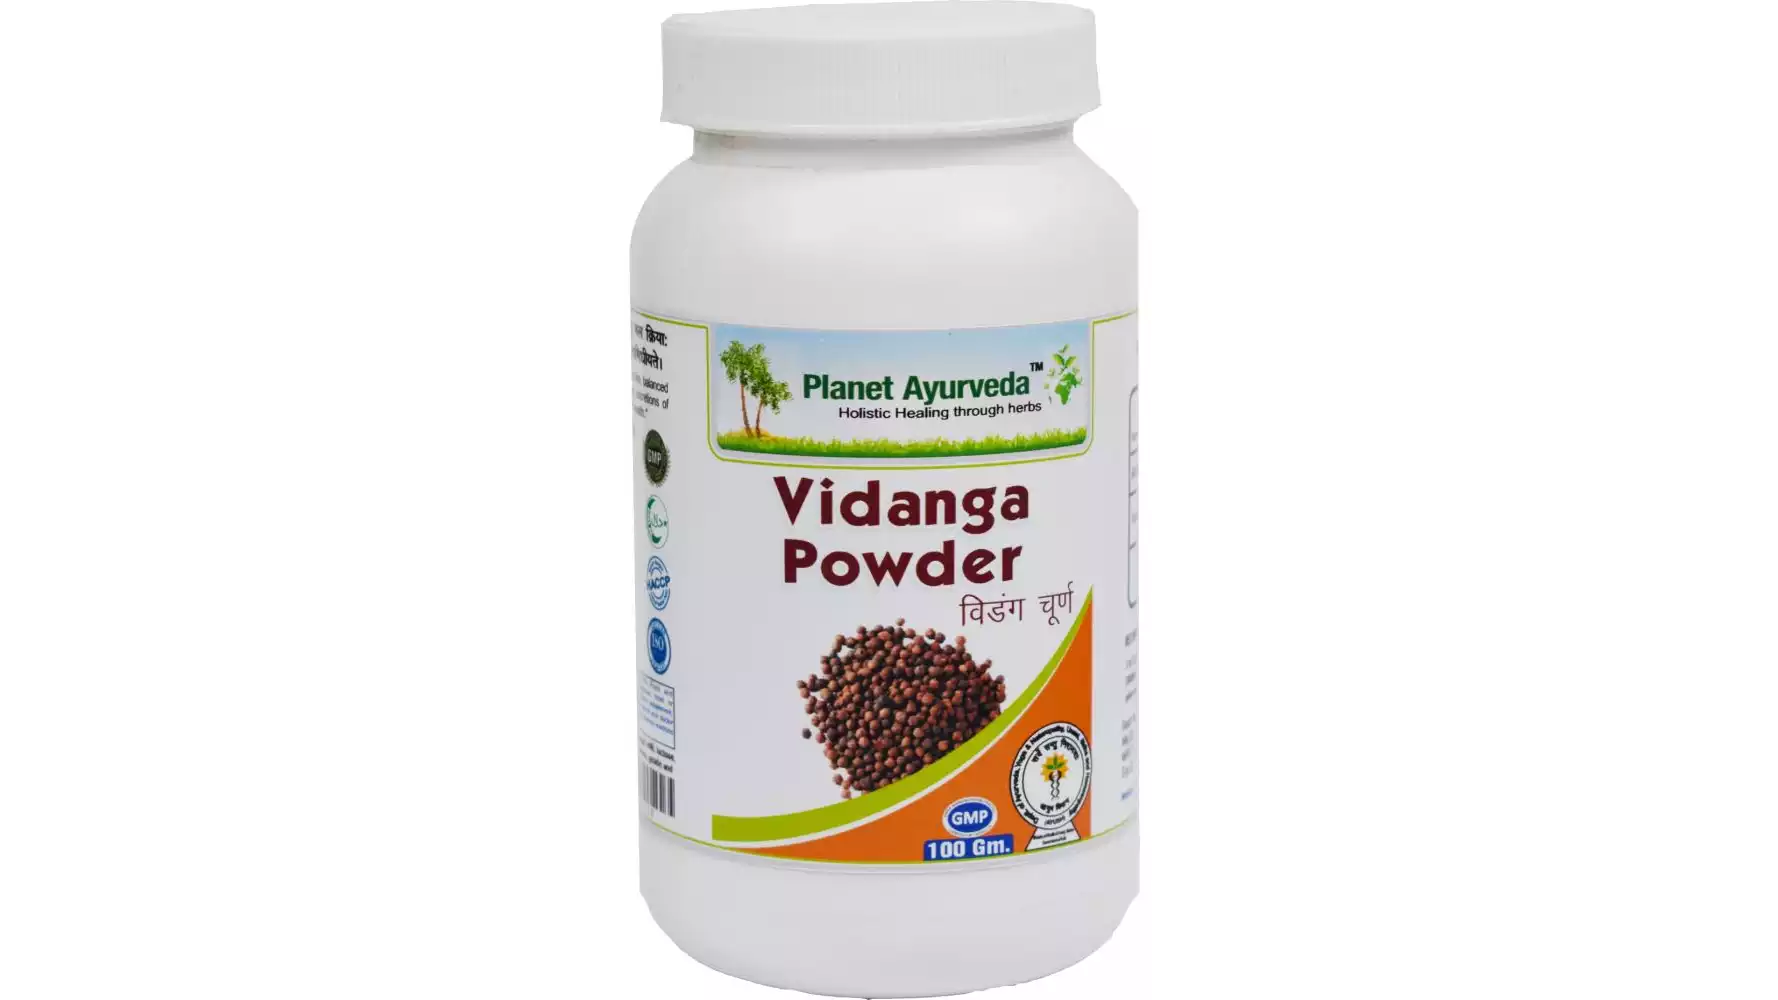 Planet Ayurveda Vidanga Powder (100g, Pack of 2)